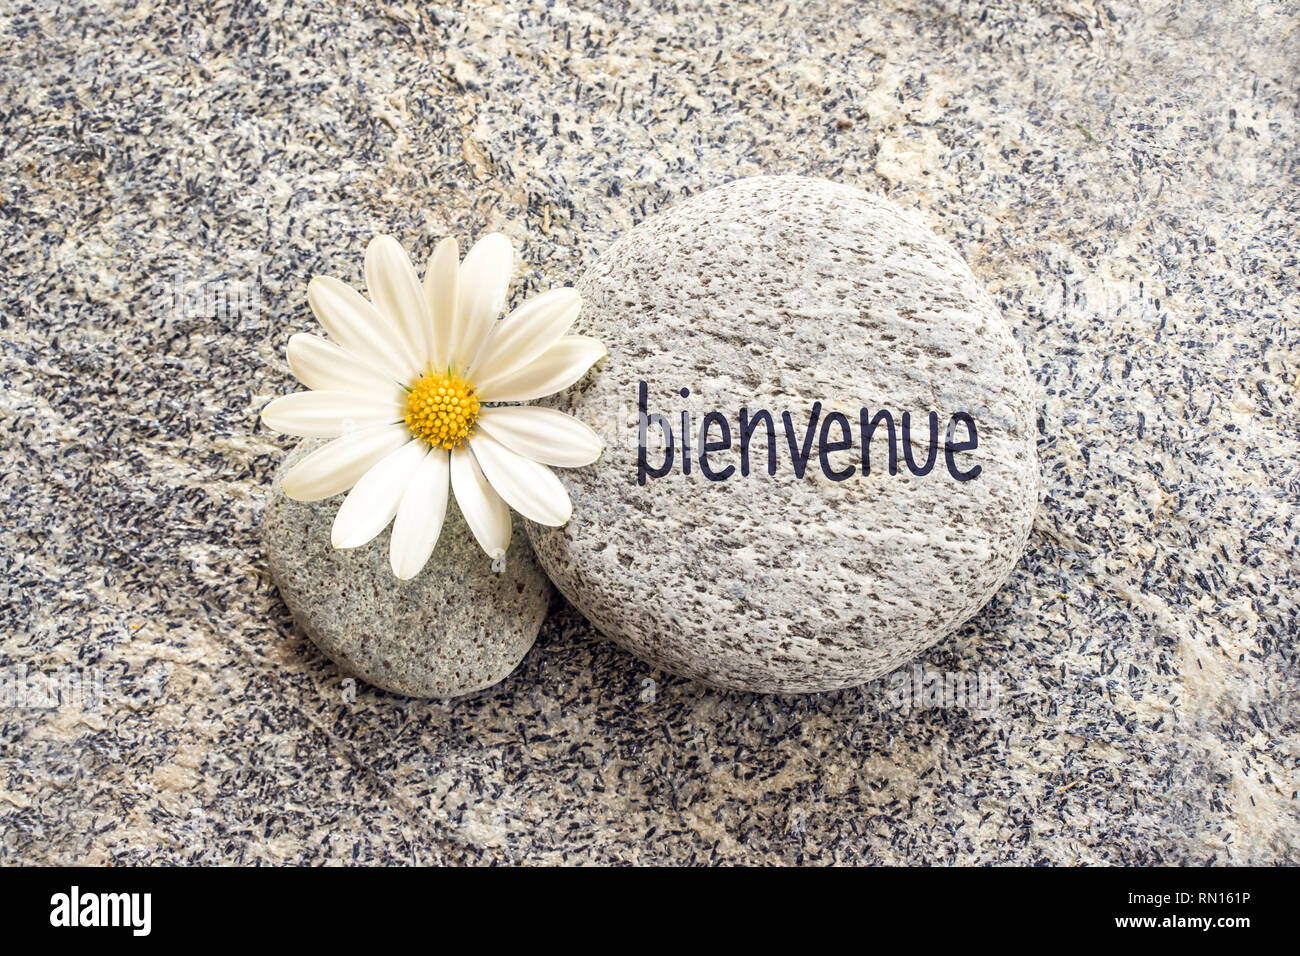 Bienvenue (significato benvenuti in francese) scritto su un sfondo di pietra con una margherita Foto Stock